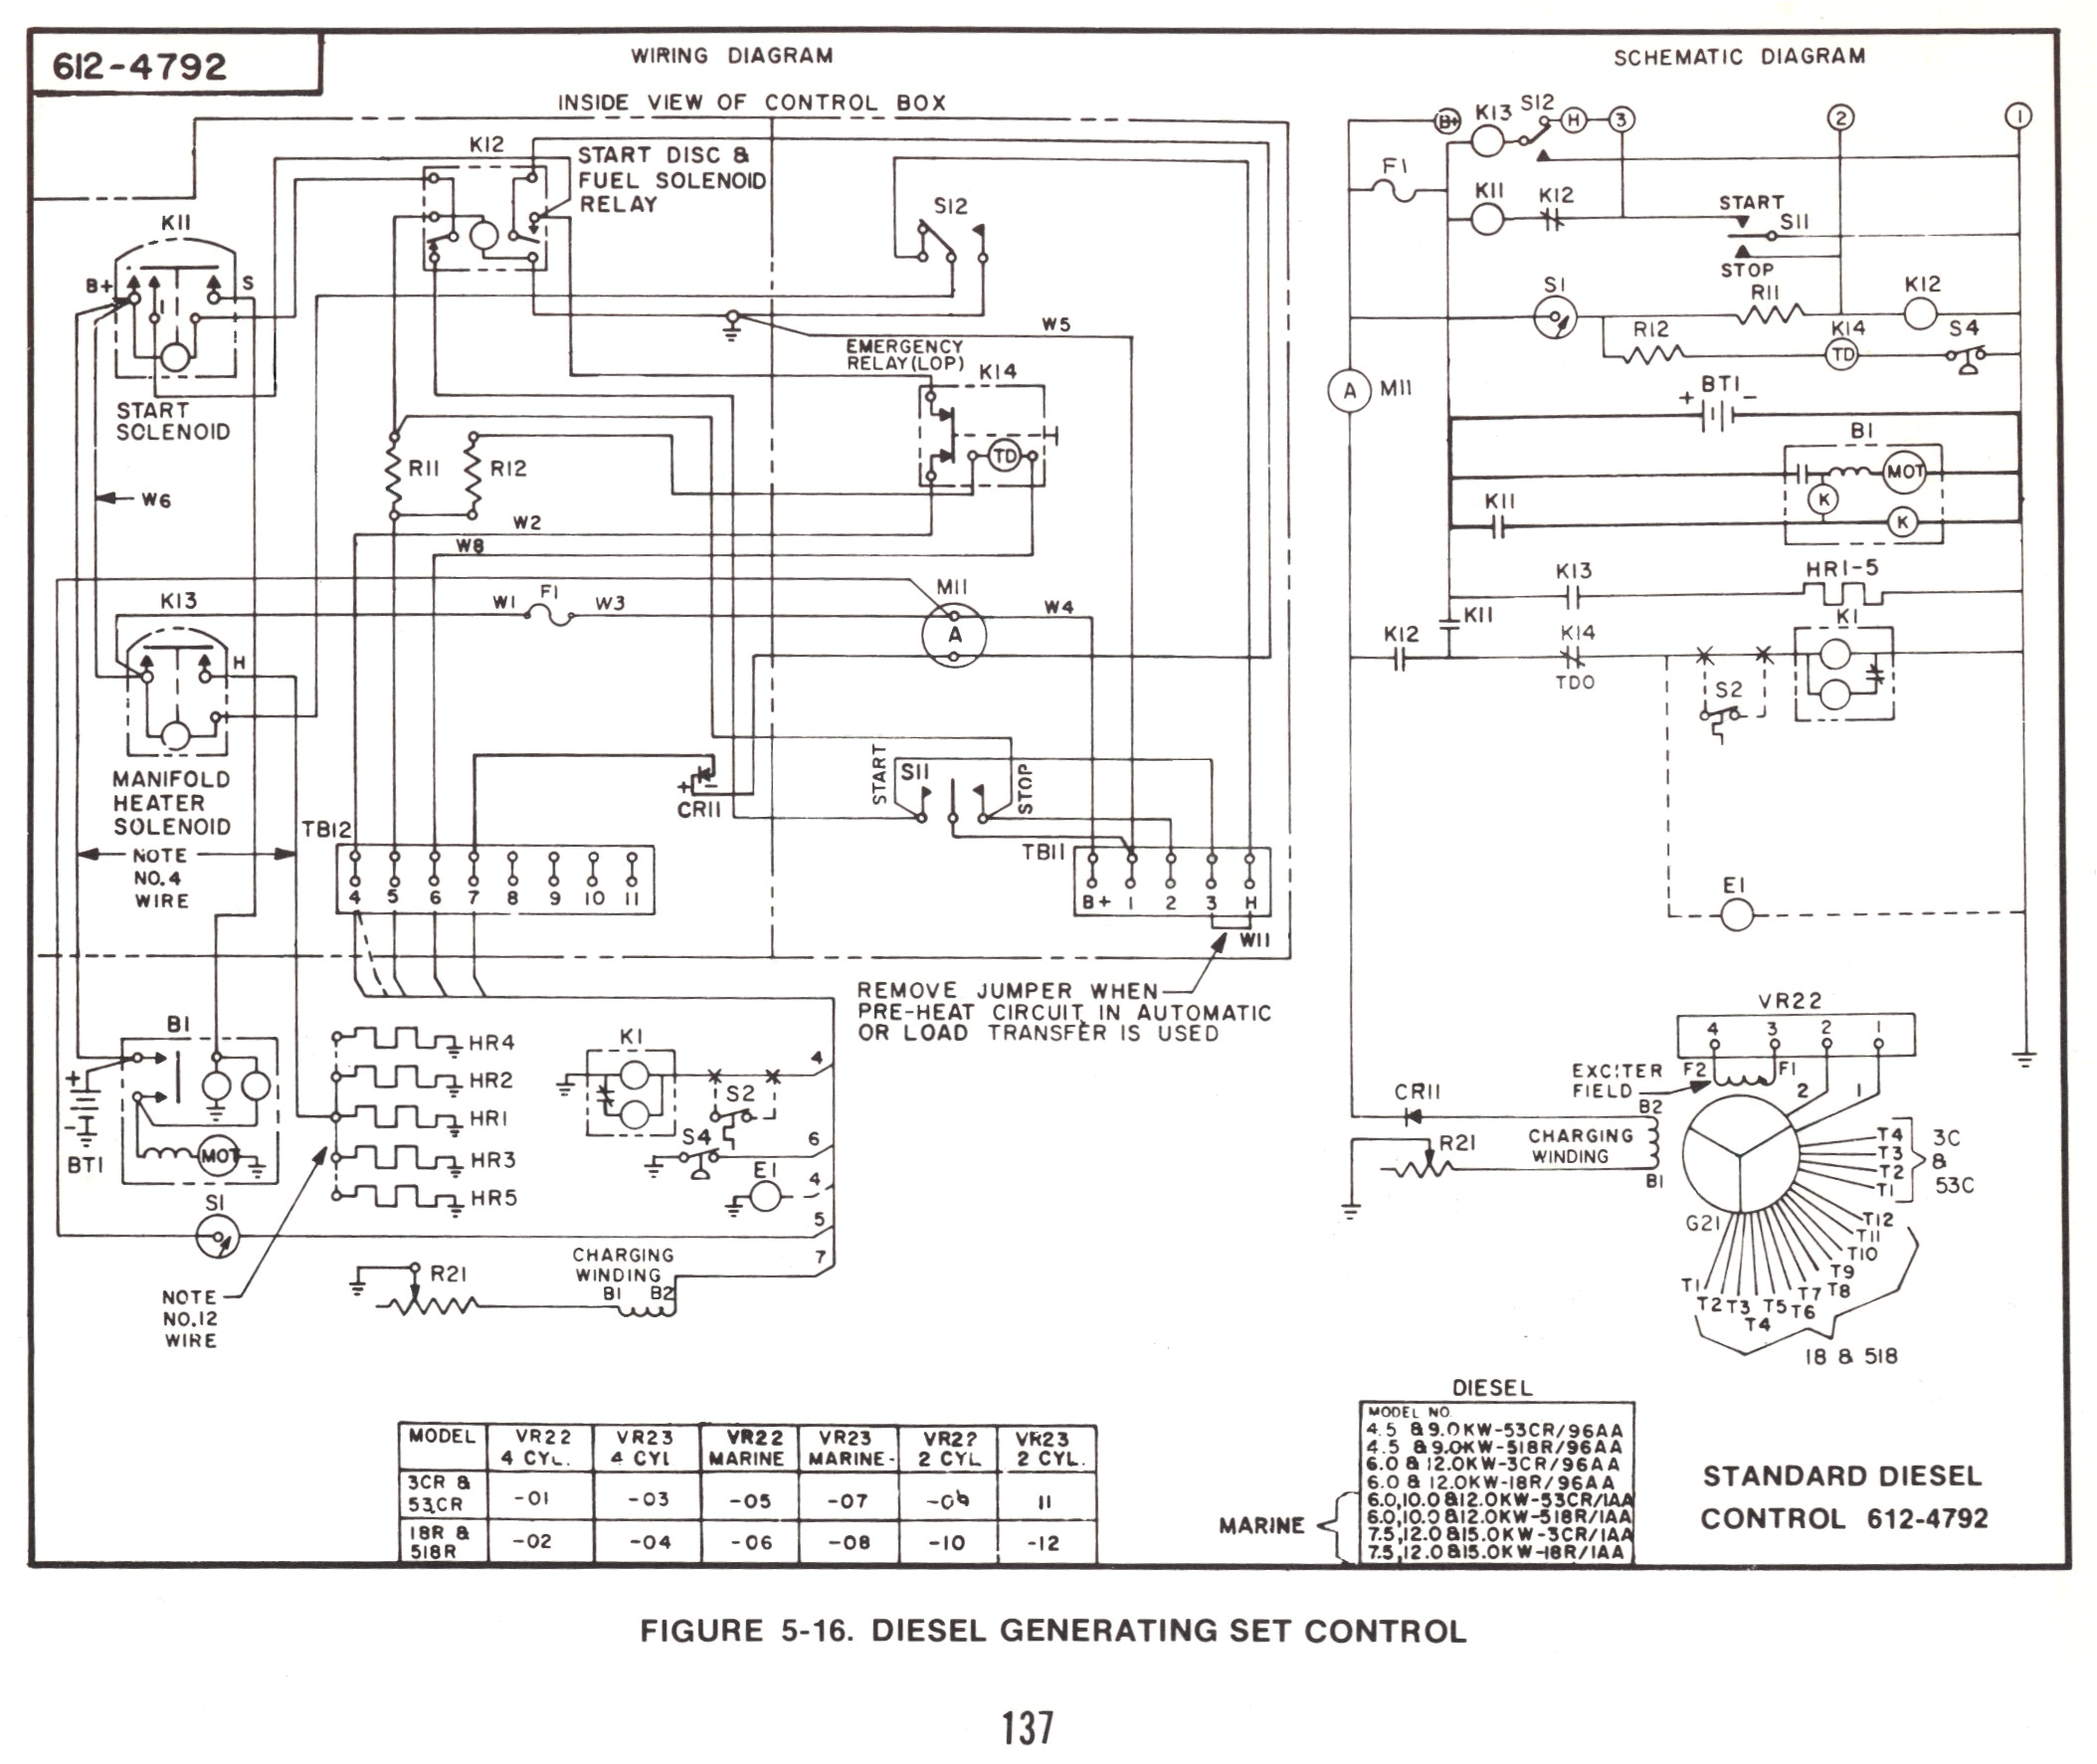 wiring diagram for onan generator wiring diagram today onan 5500 wiring diagram onan 5500 wiring diagram